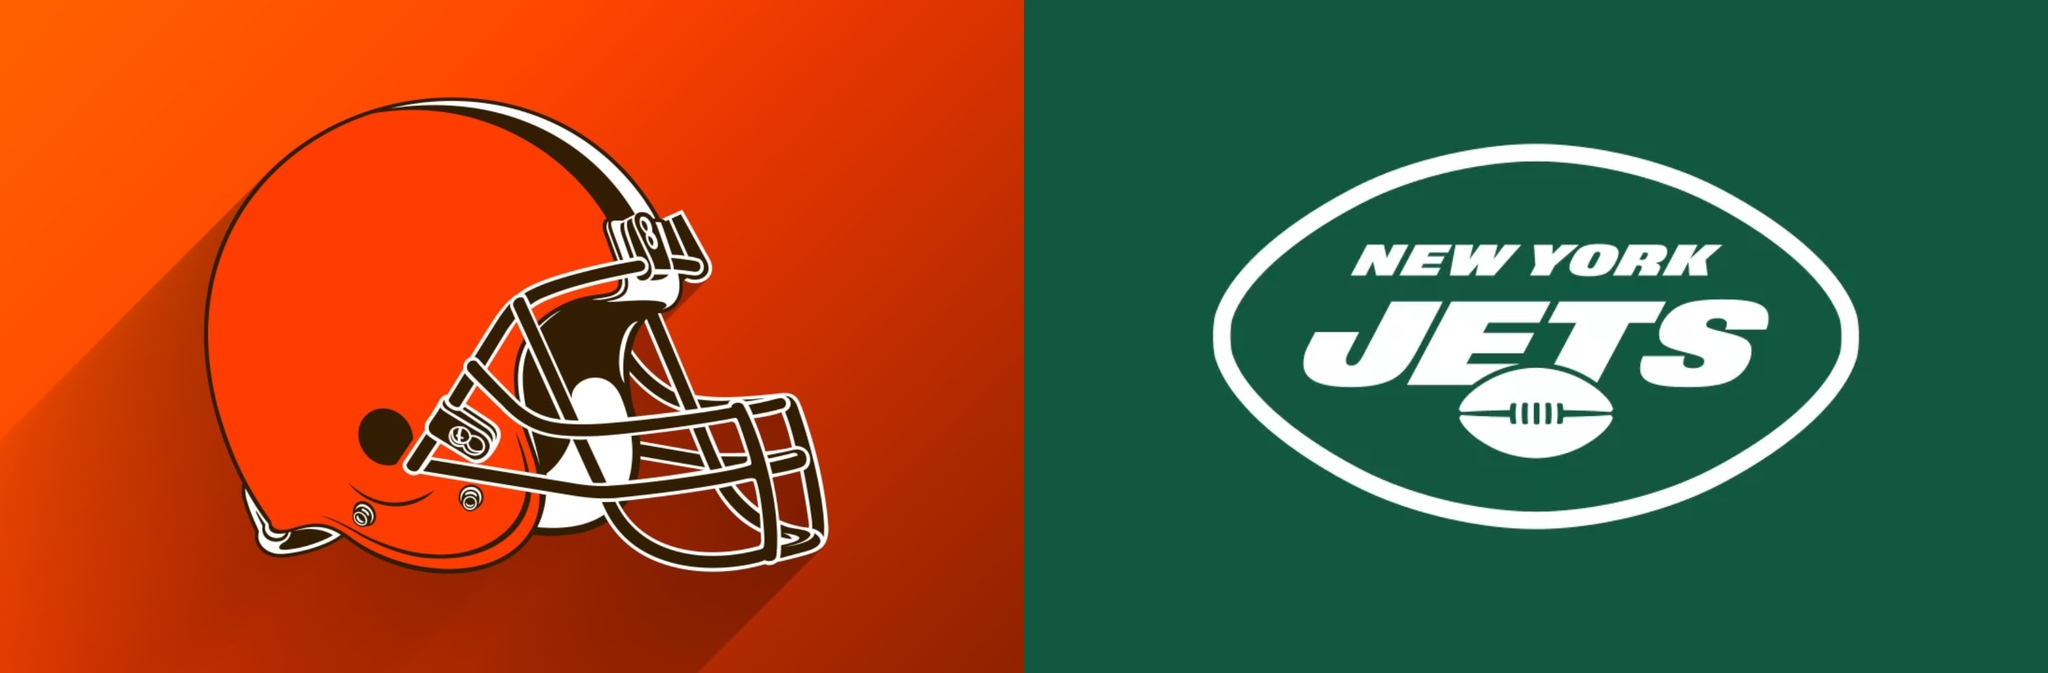 Logotipos de los Cleveland Browns y New York Jets